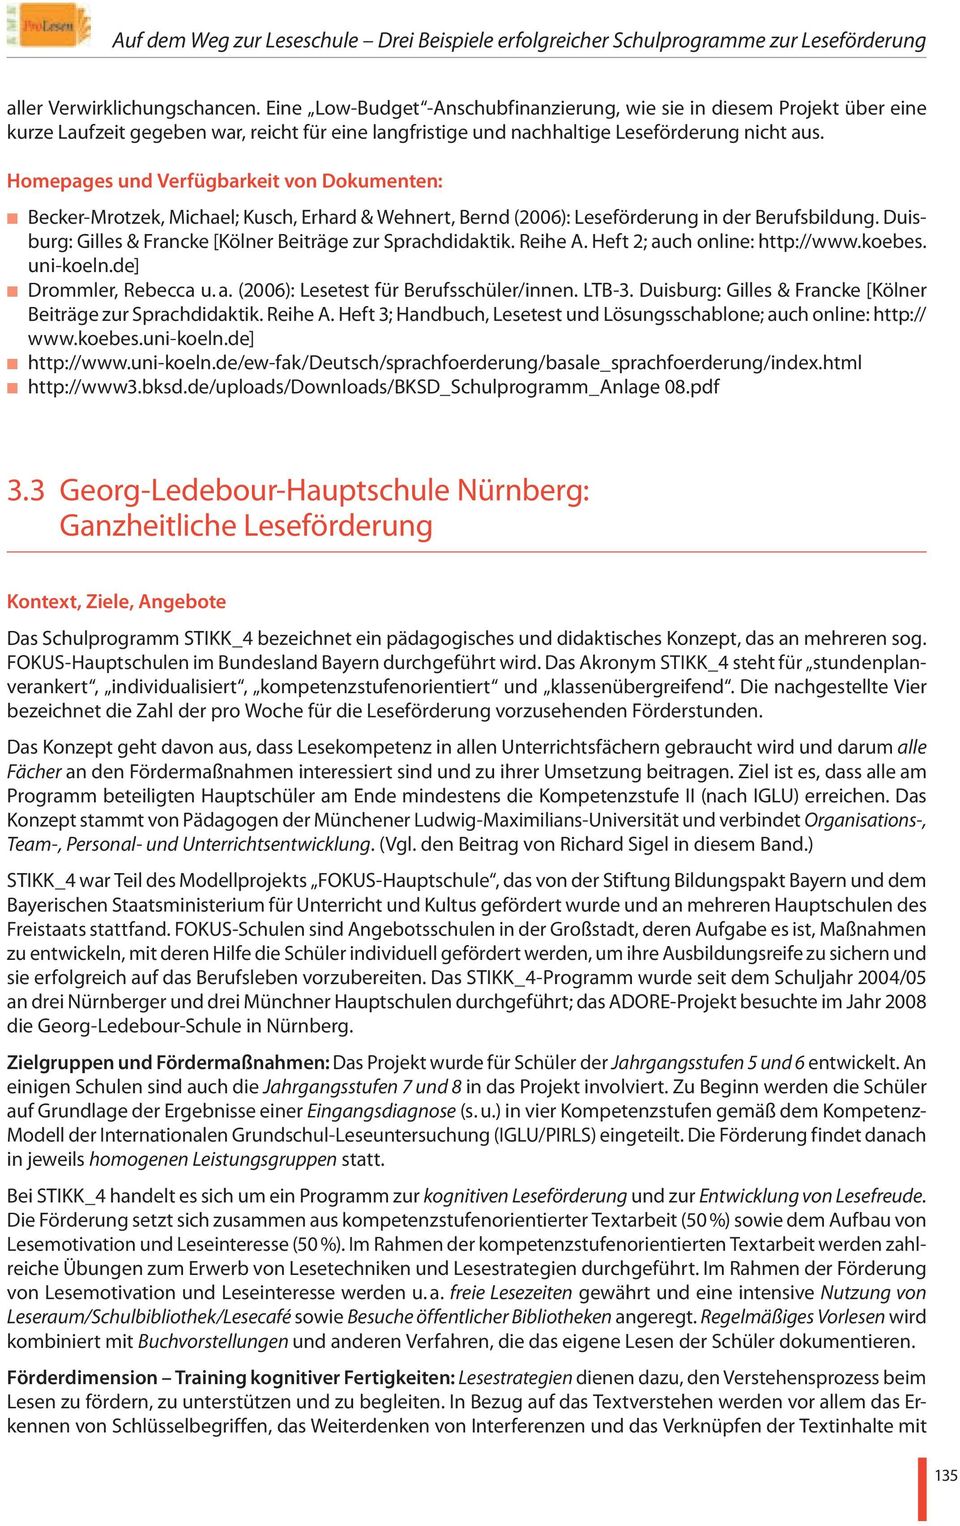 Homepages und Verfügbarkeit von Dokumenten: Becker-Mrotzek, Michael; Kusch, Erhard & Wehnert, Bernd (2006): Leseförderung in der Berufsbildung.